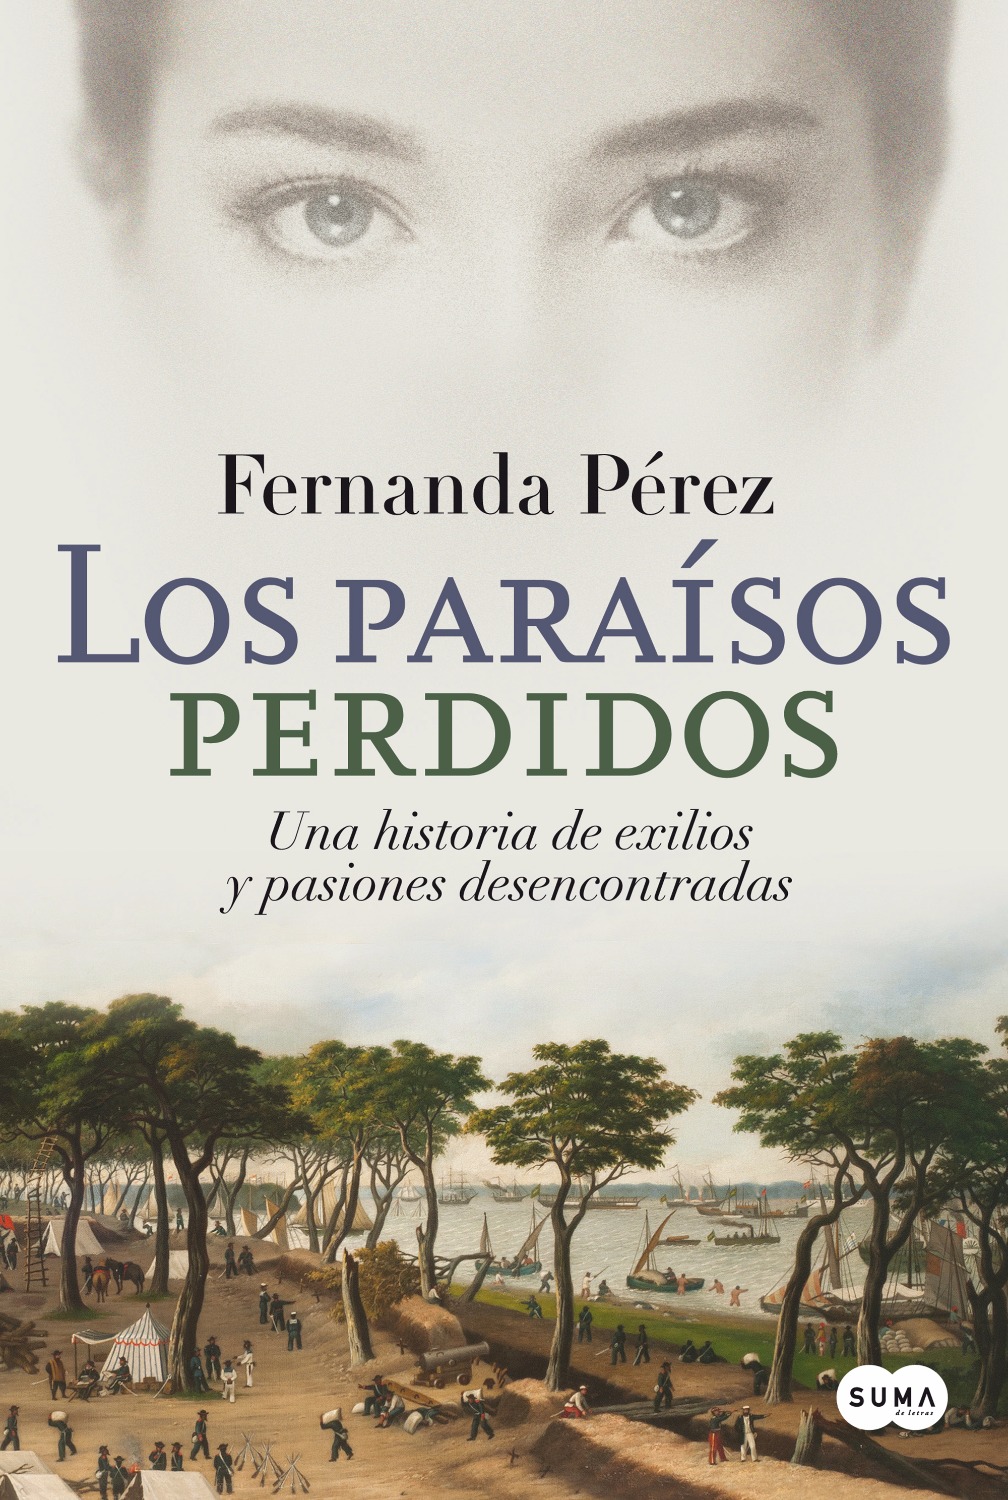 Comentario de "Los paraísos perdidos", de Fernanda Pérez